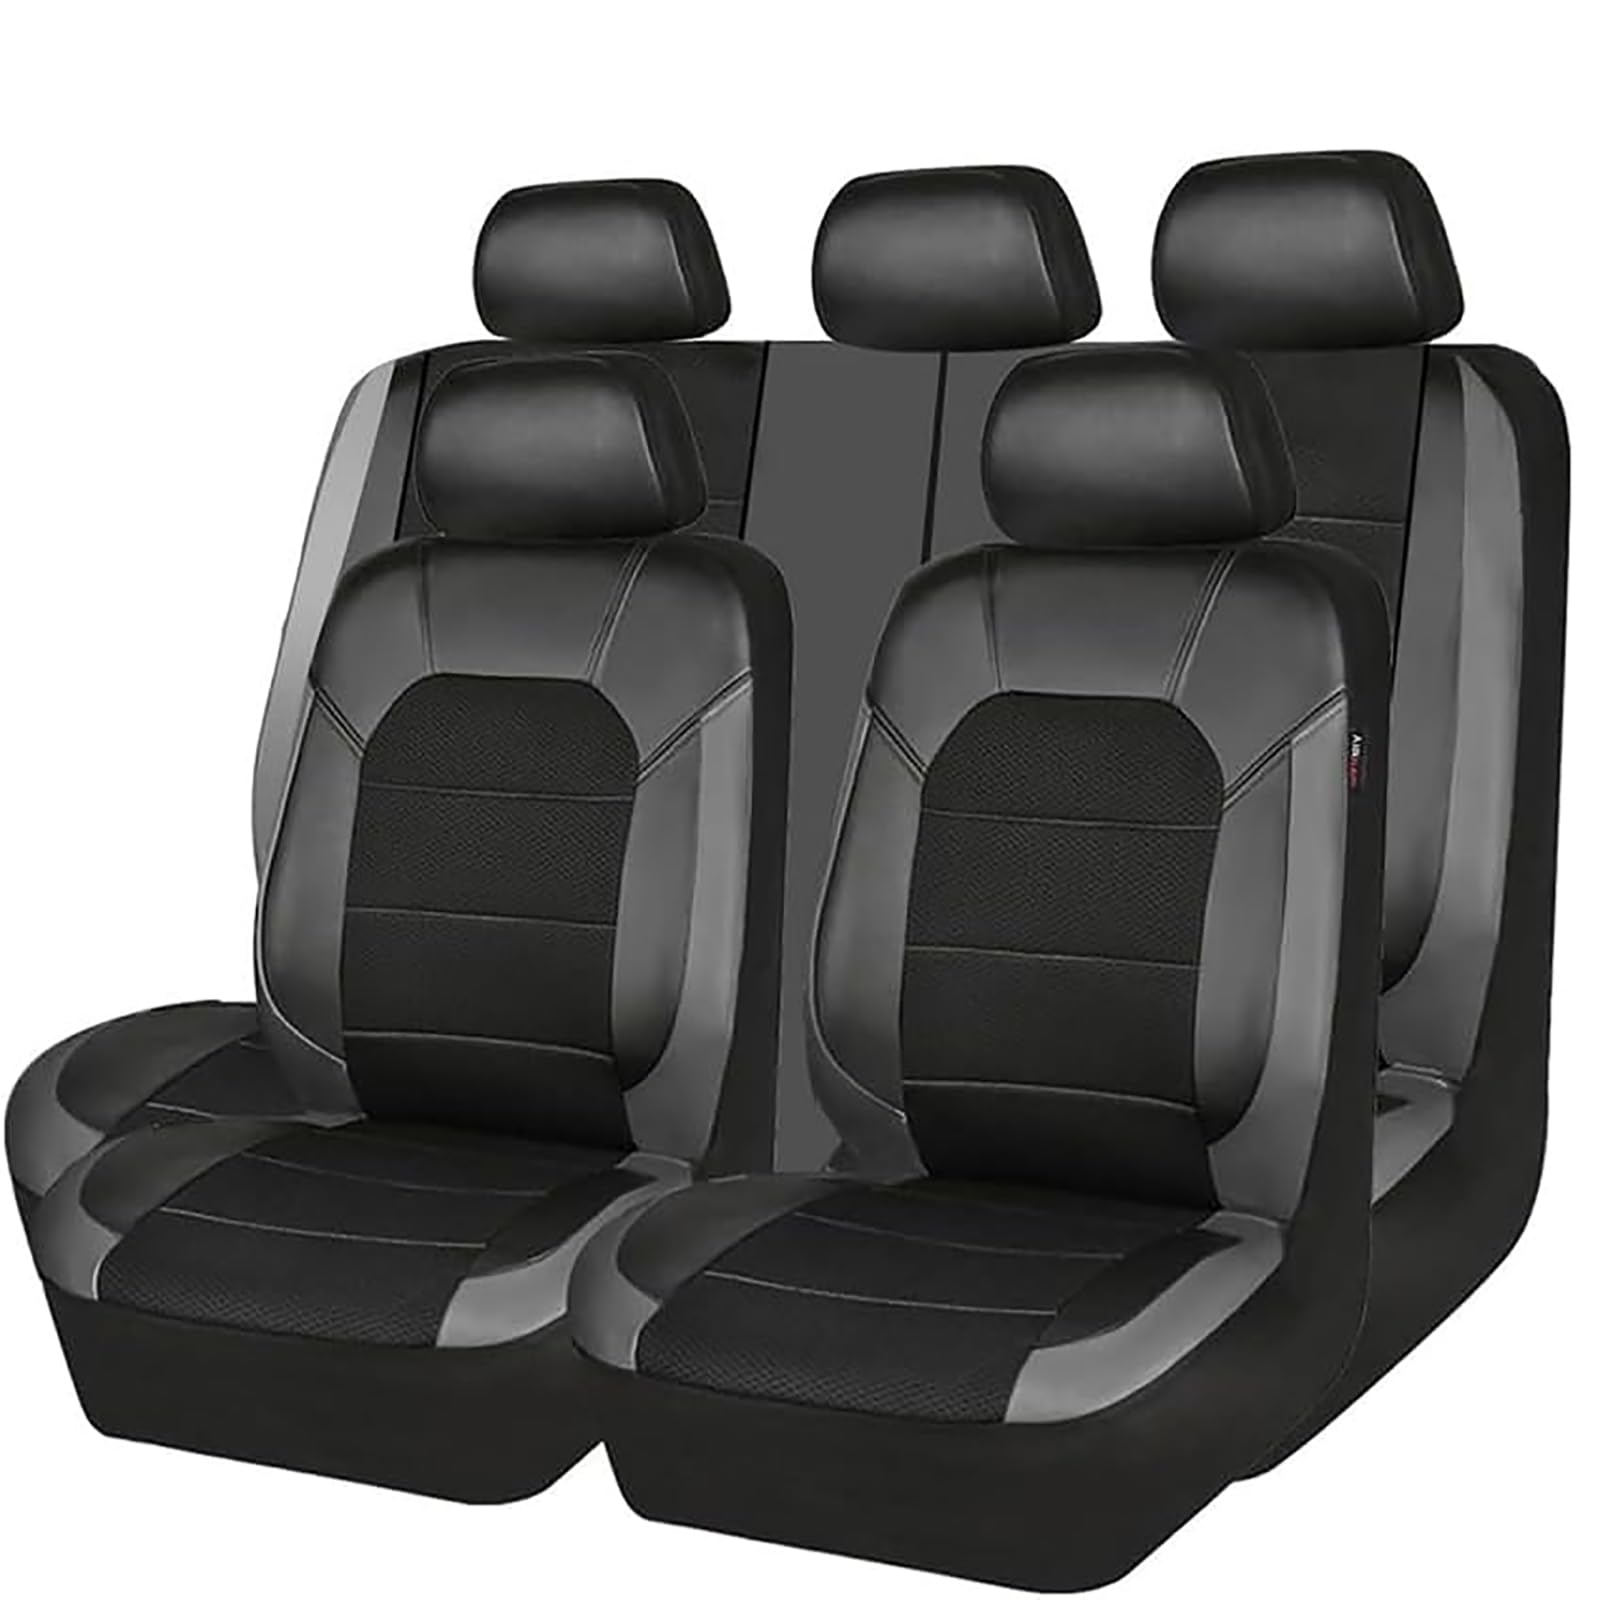 EYHQKRTR Auto Leder Sitzkissen Für Mazda CX-5 2.Generation (KF) 2017-2021, 5 Sitzer Full Set SitzbezüGe Schonbezug Vorne Rückbank Sitzschutz Compatible Airbag Innenraum Zubehör,B/Grey von EYHQKRTR